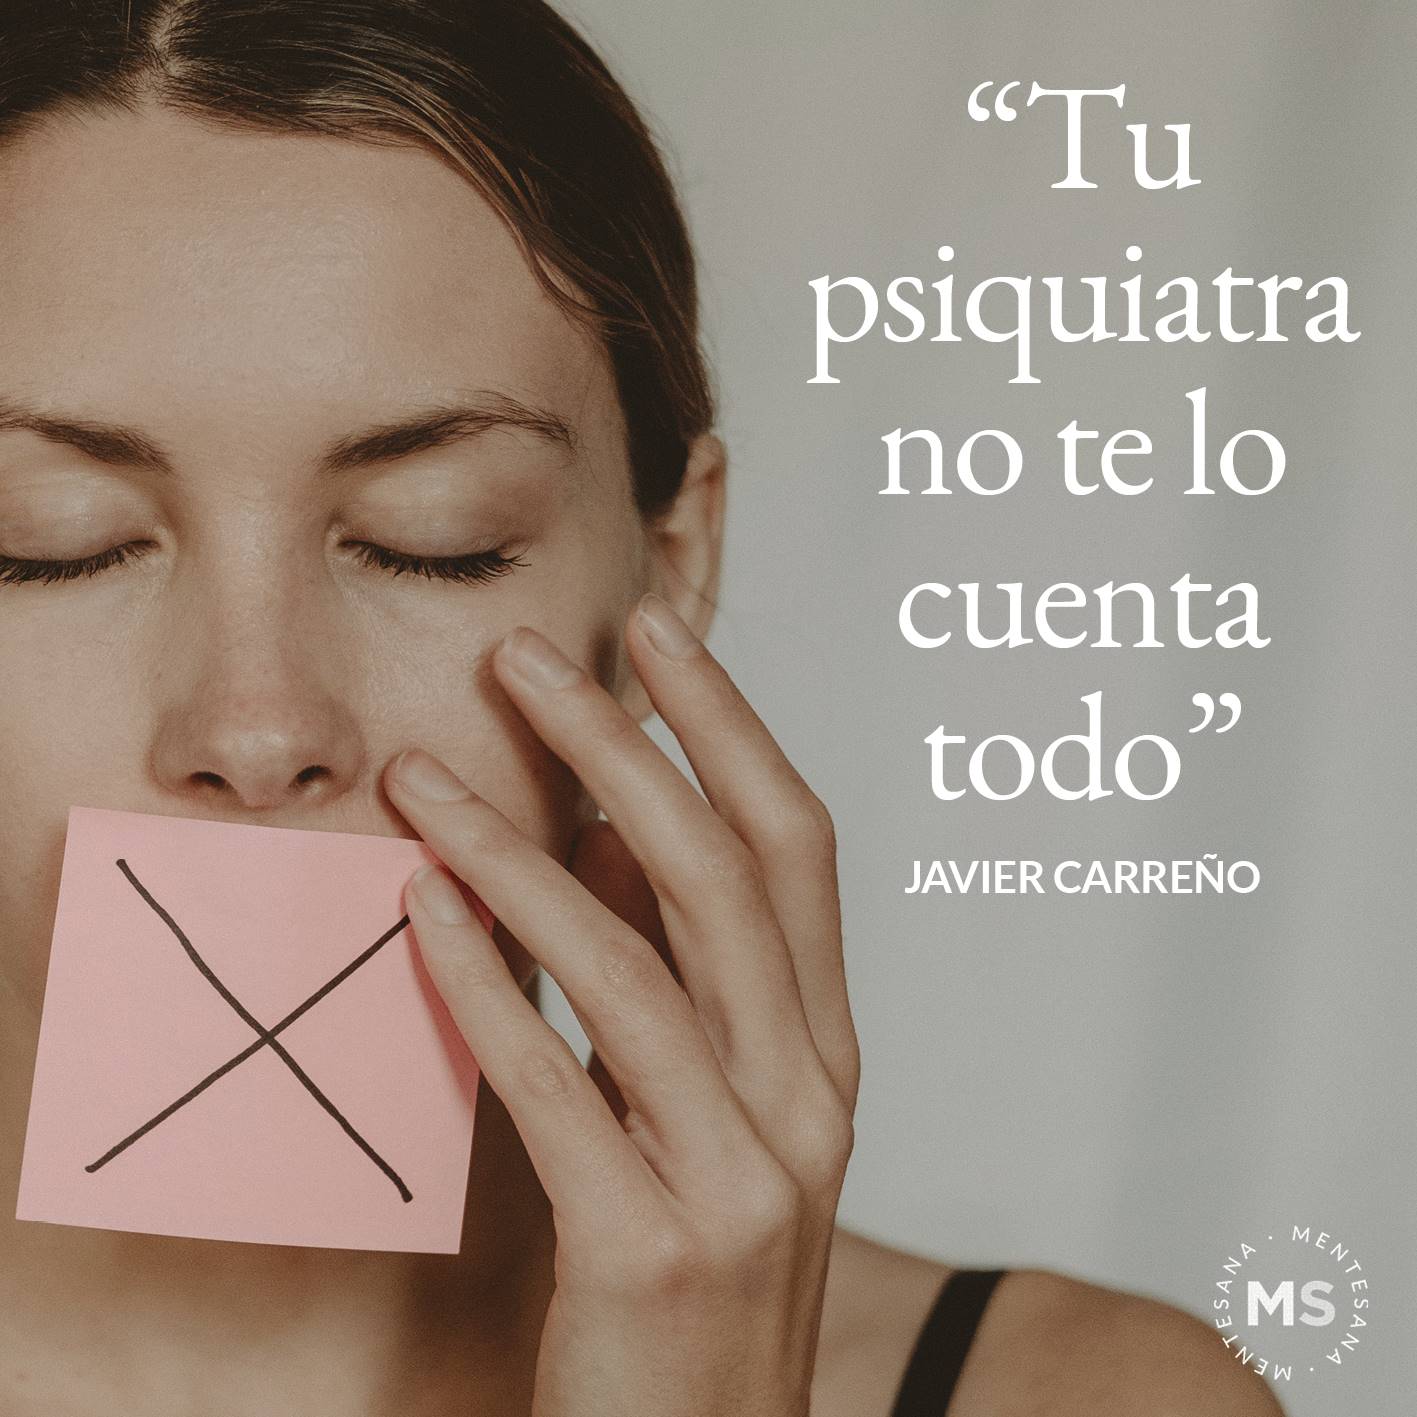 FRASES DIA DE LA DEPRESION9. "Tu psiquiatra no te lo cuenta todo.” Javier Carreño